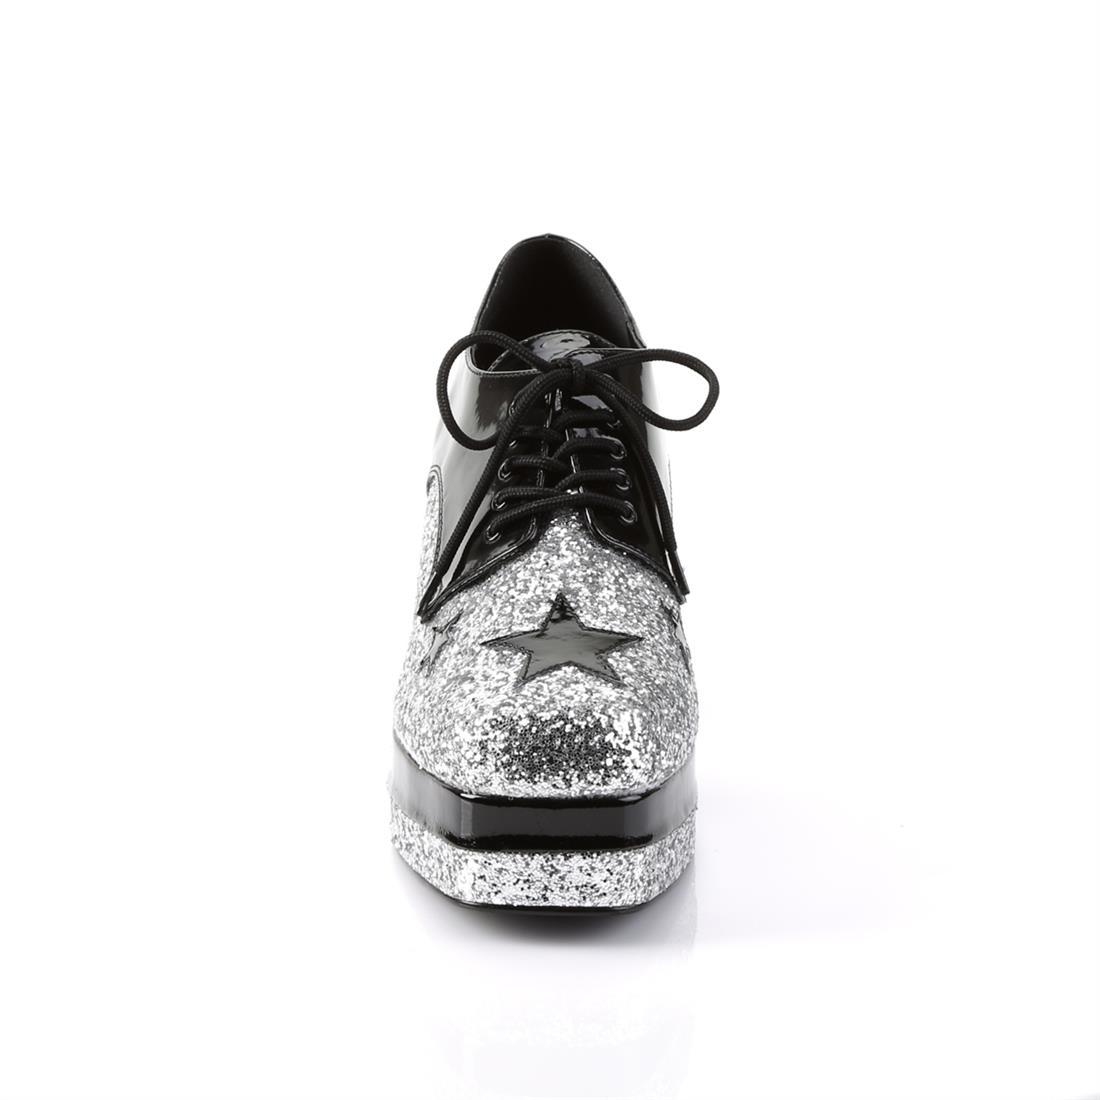 Glam Rock Platform Shoes - Black/Silver